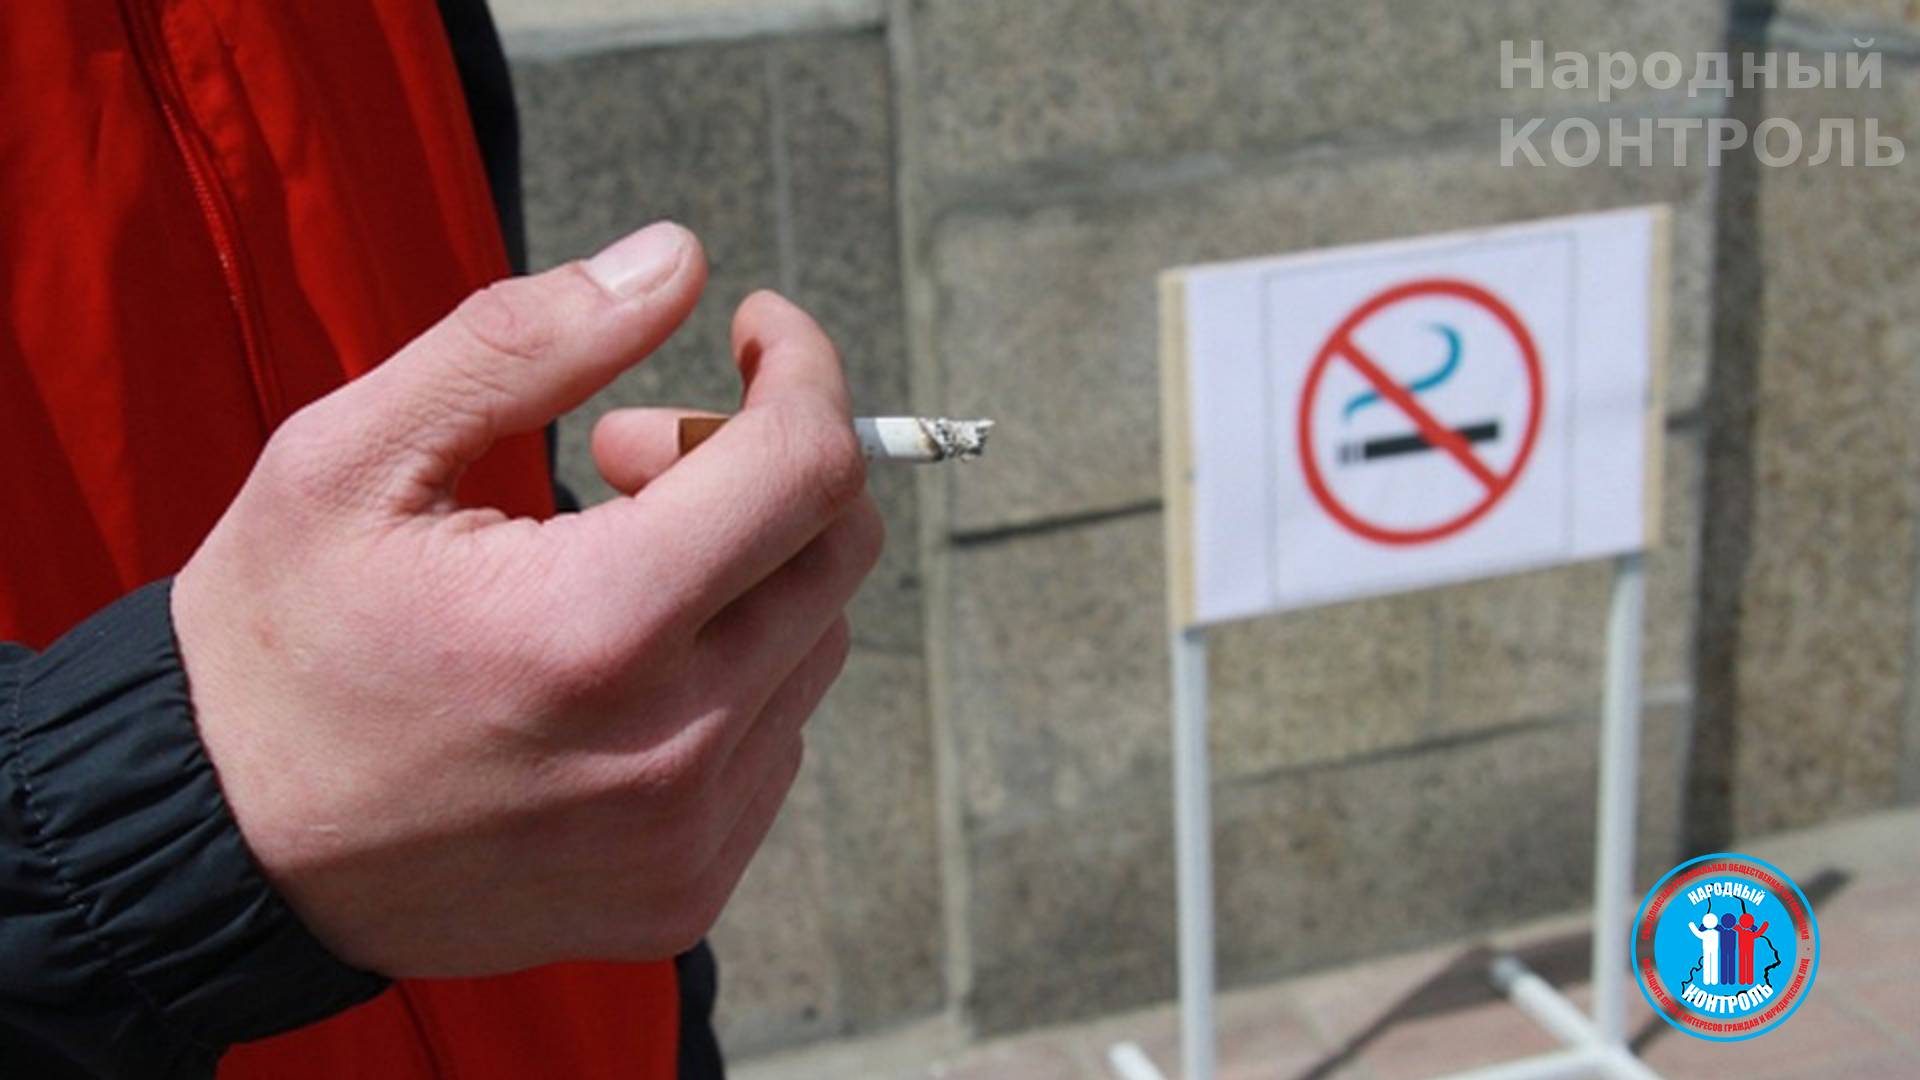 Курение в общественных местах